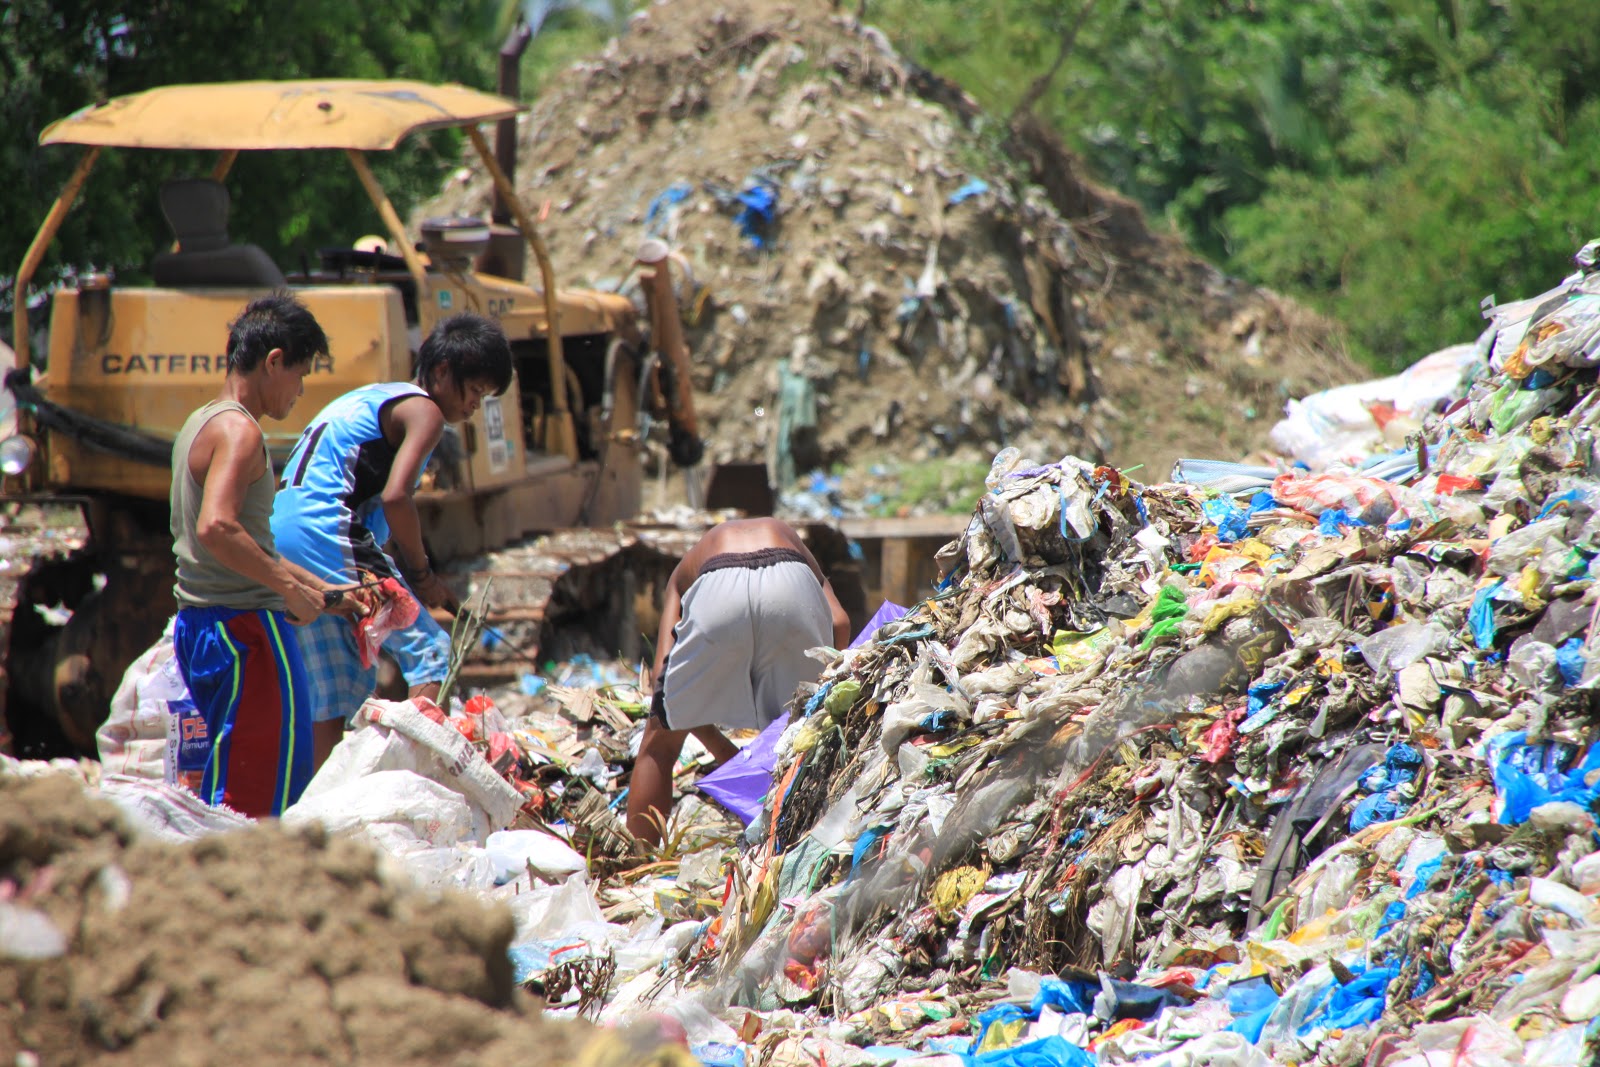 Mabuhay Online: SPECIAL REPORT(3/3): Solusyon ba sa polusyon ang butas